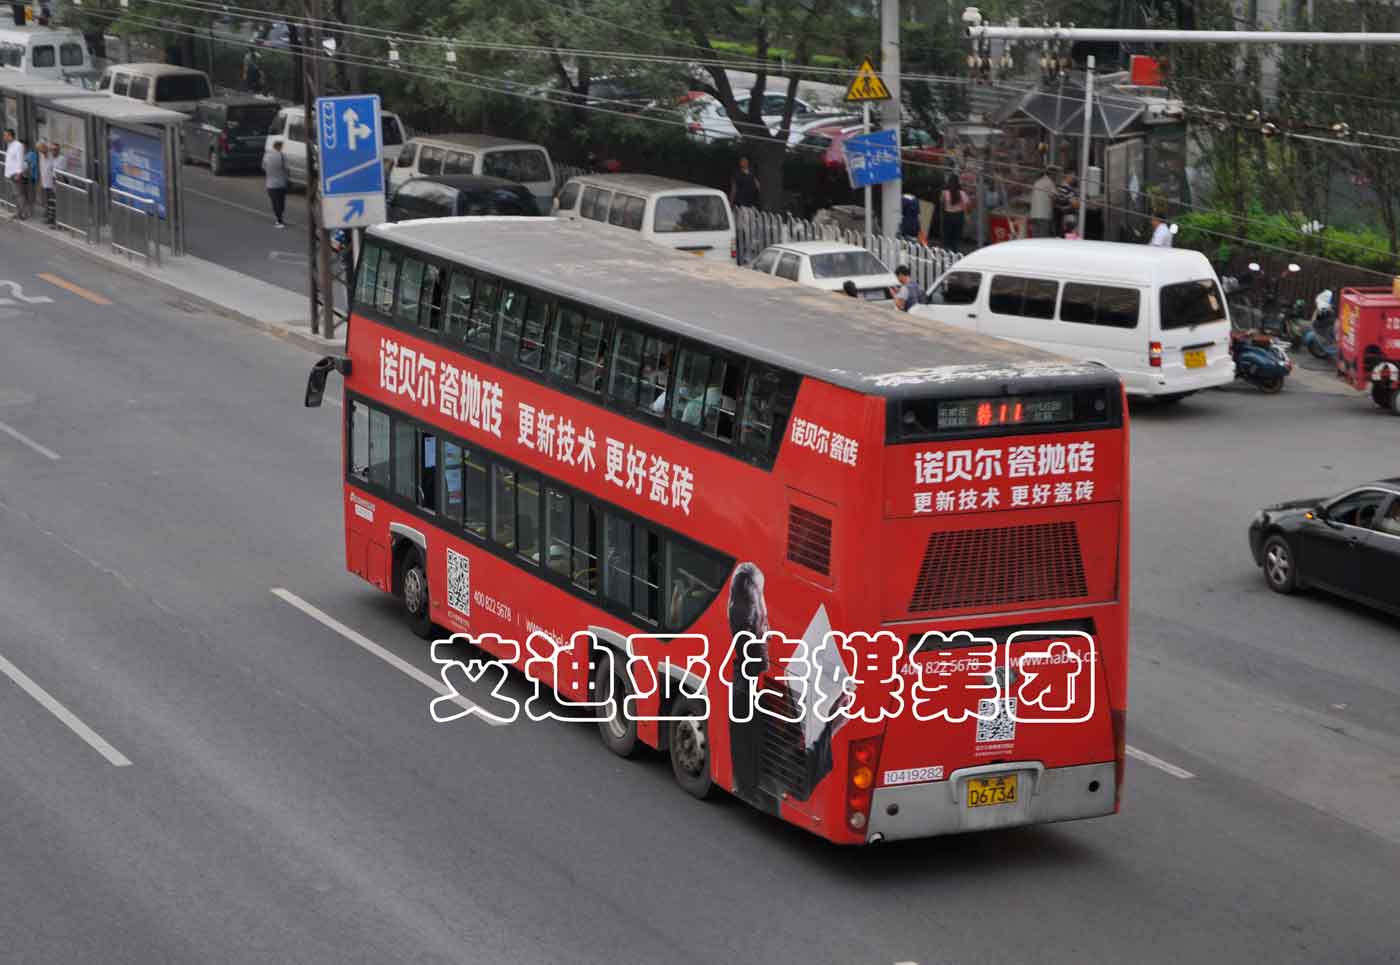 公交车广告案例图片-乐橙lc8